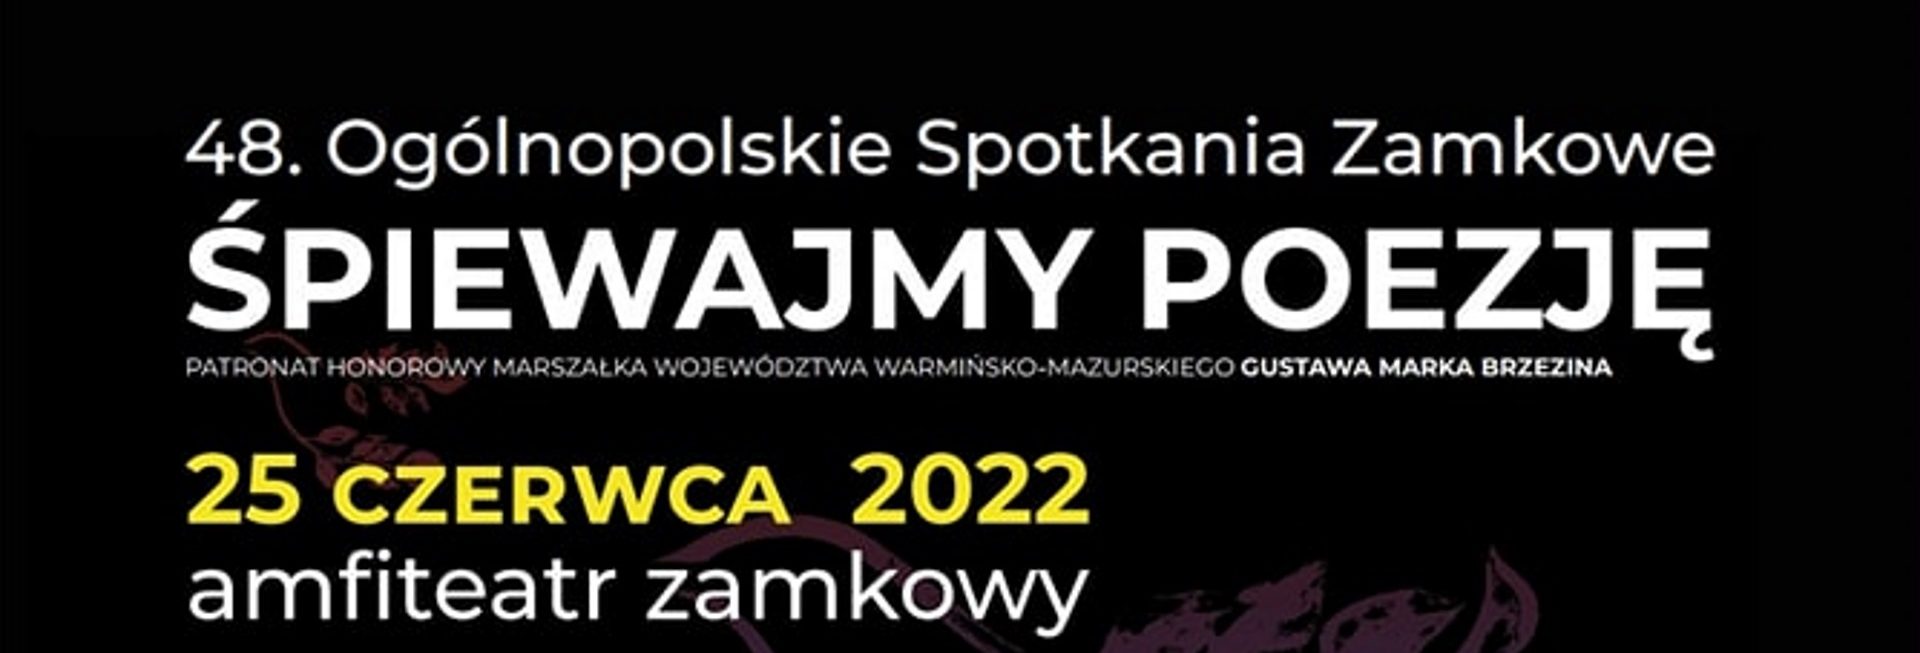 Plakat graficzny zapraszający do Olsztyna na cykliczną imprezę 48. edycję Ogólnopolskich Spotkań Zamkowych „Śpiewajmy Poezję” Olsztyn 2022.